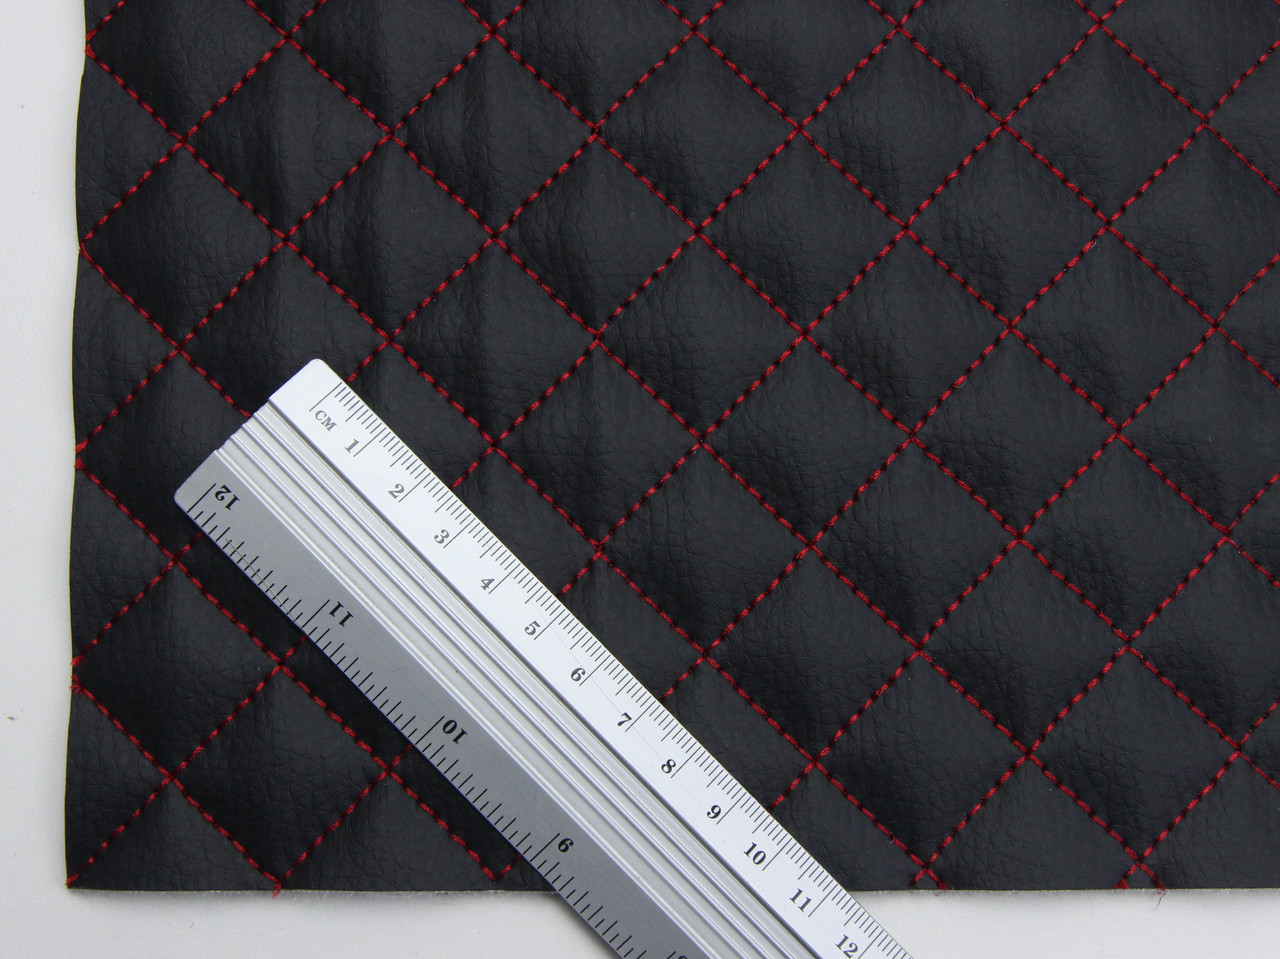 Кожзам стеганый черный «маленькой-ромб» прошитый красной нитью дублированный синтепоном и флизелином, ширина 1,35м детальная фотка